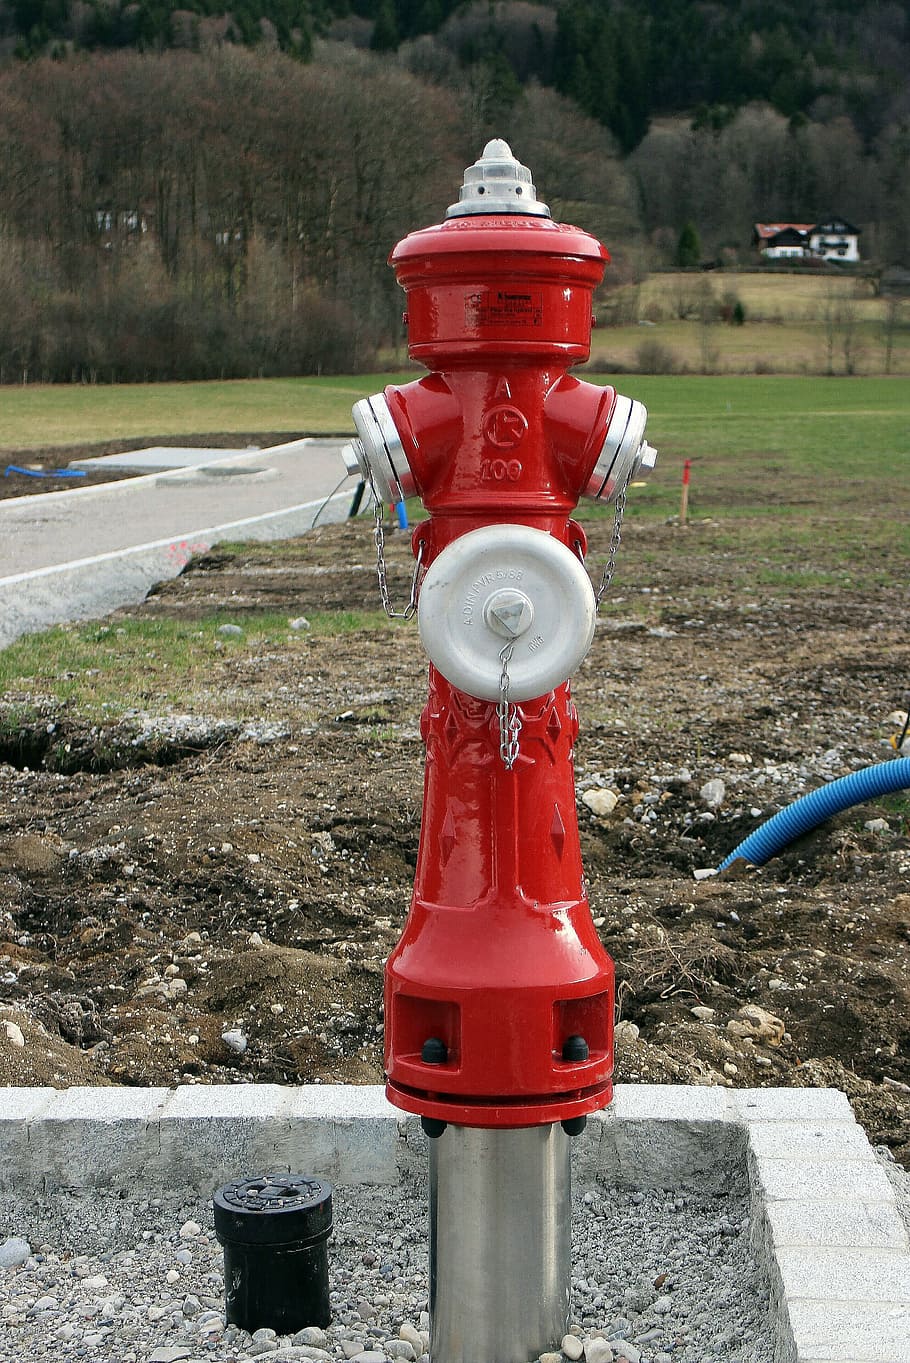 hidrante, agua, metal, rojo, fuego, eliminar, eliminar fuego, extinción de incendios, eliminación, sistema de distribución de agua